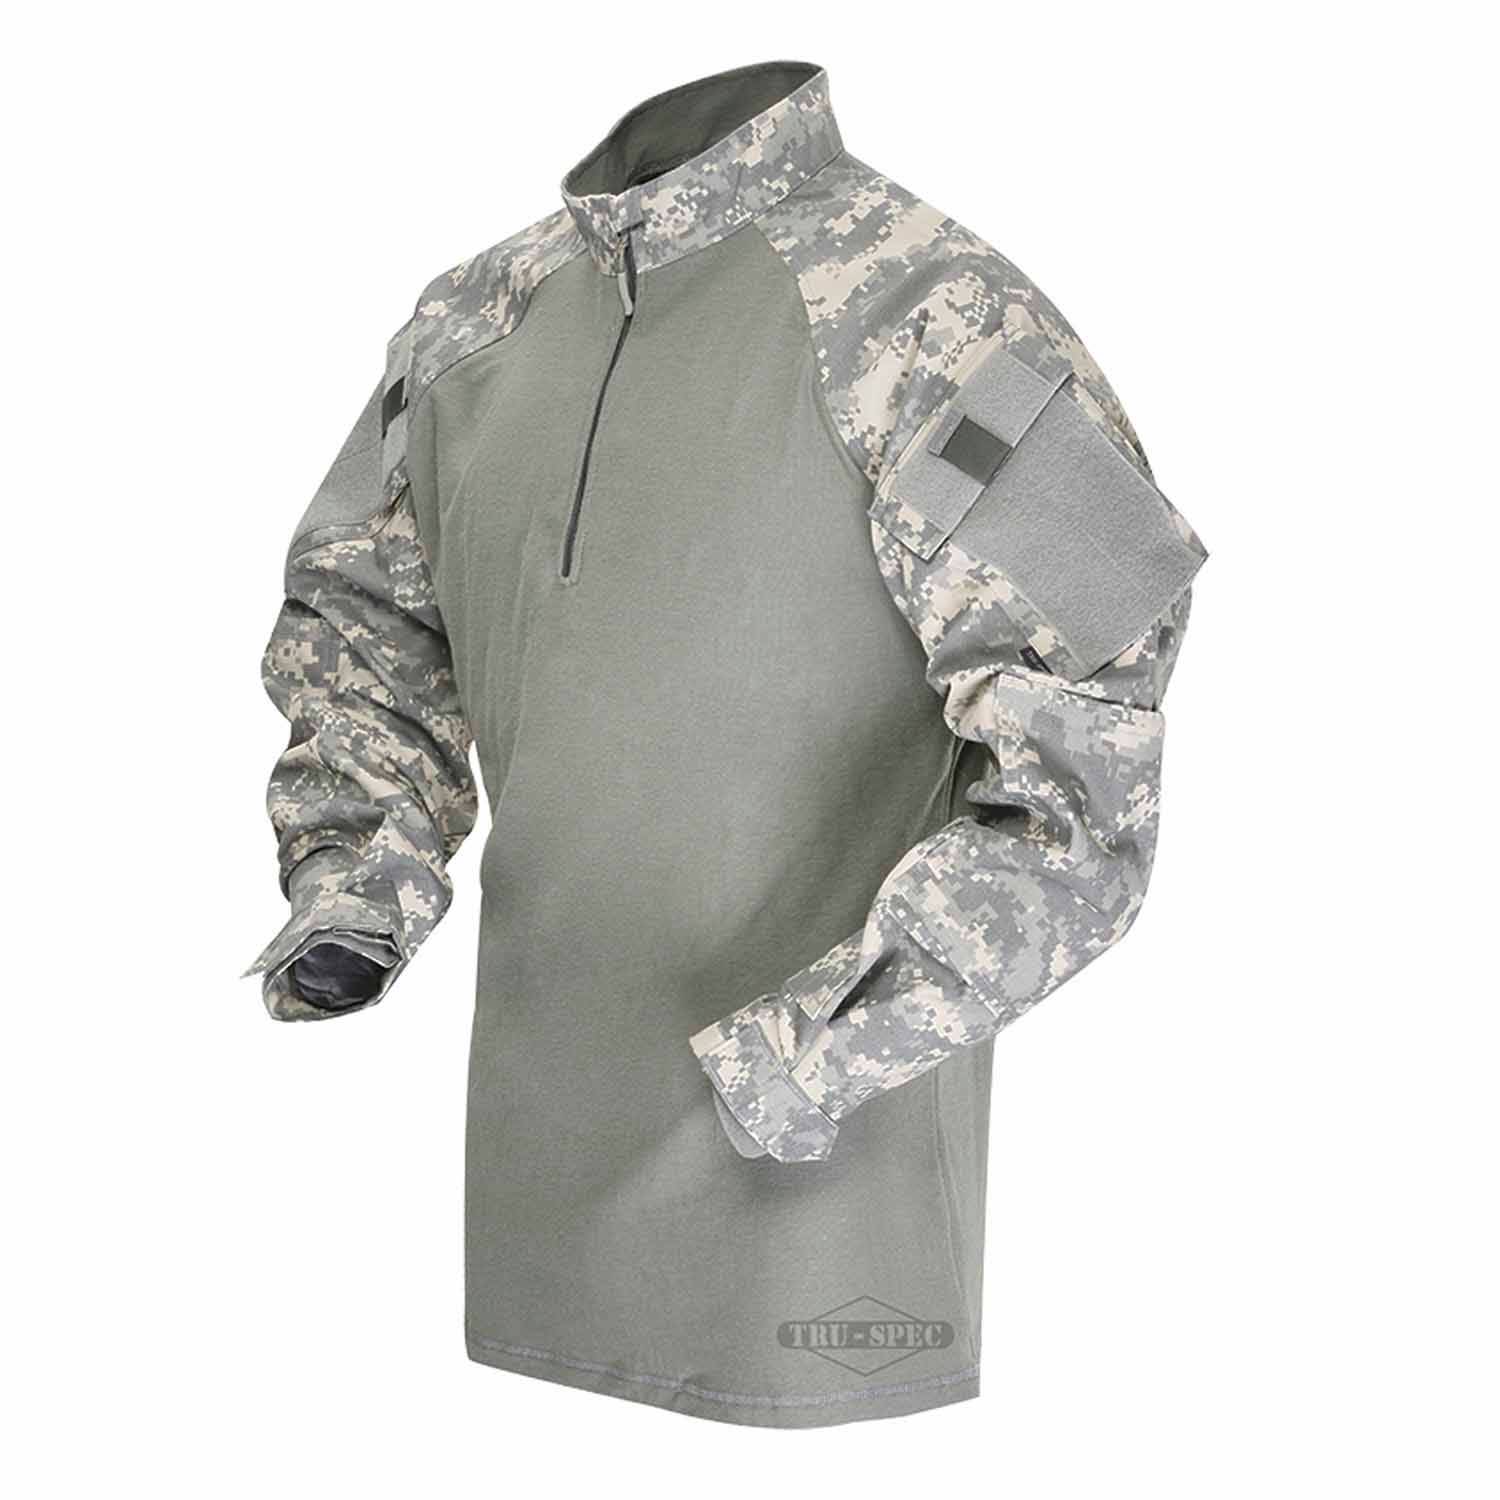 Truspec Tru Long Sleeve 1/4 Zip Combat Shirt Od Green Regular Large 2565005 